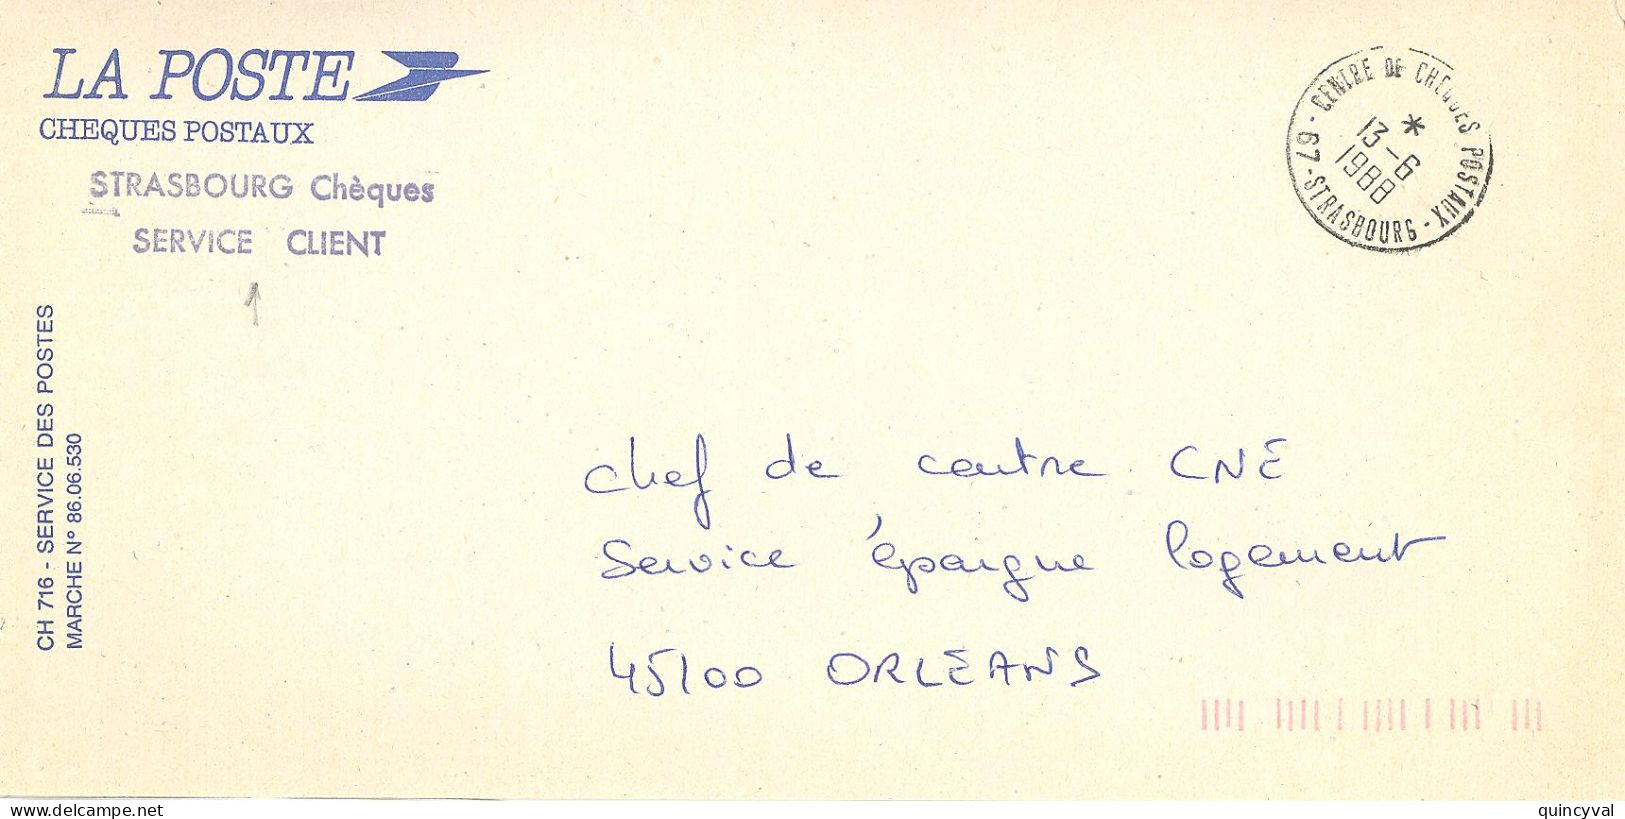 CENTRE DE CHEQUES POSATAUX 67 STRASBOURG  Ob 13 6 1988  Lettre Enveloppe CCP Cheques Postaux - Handstempel